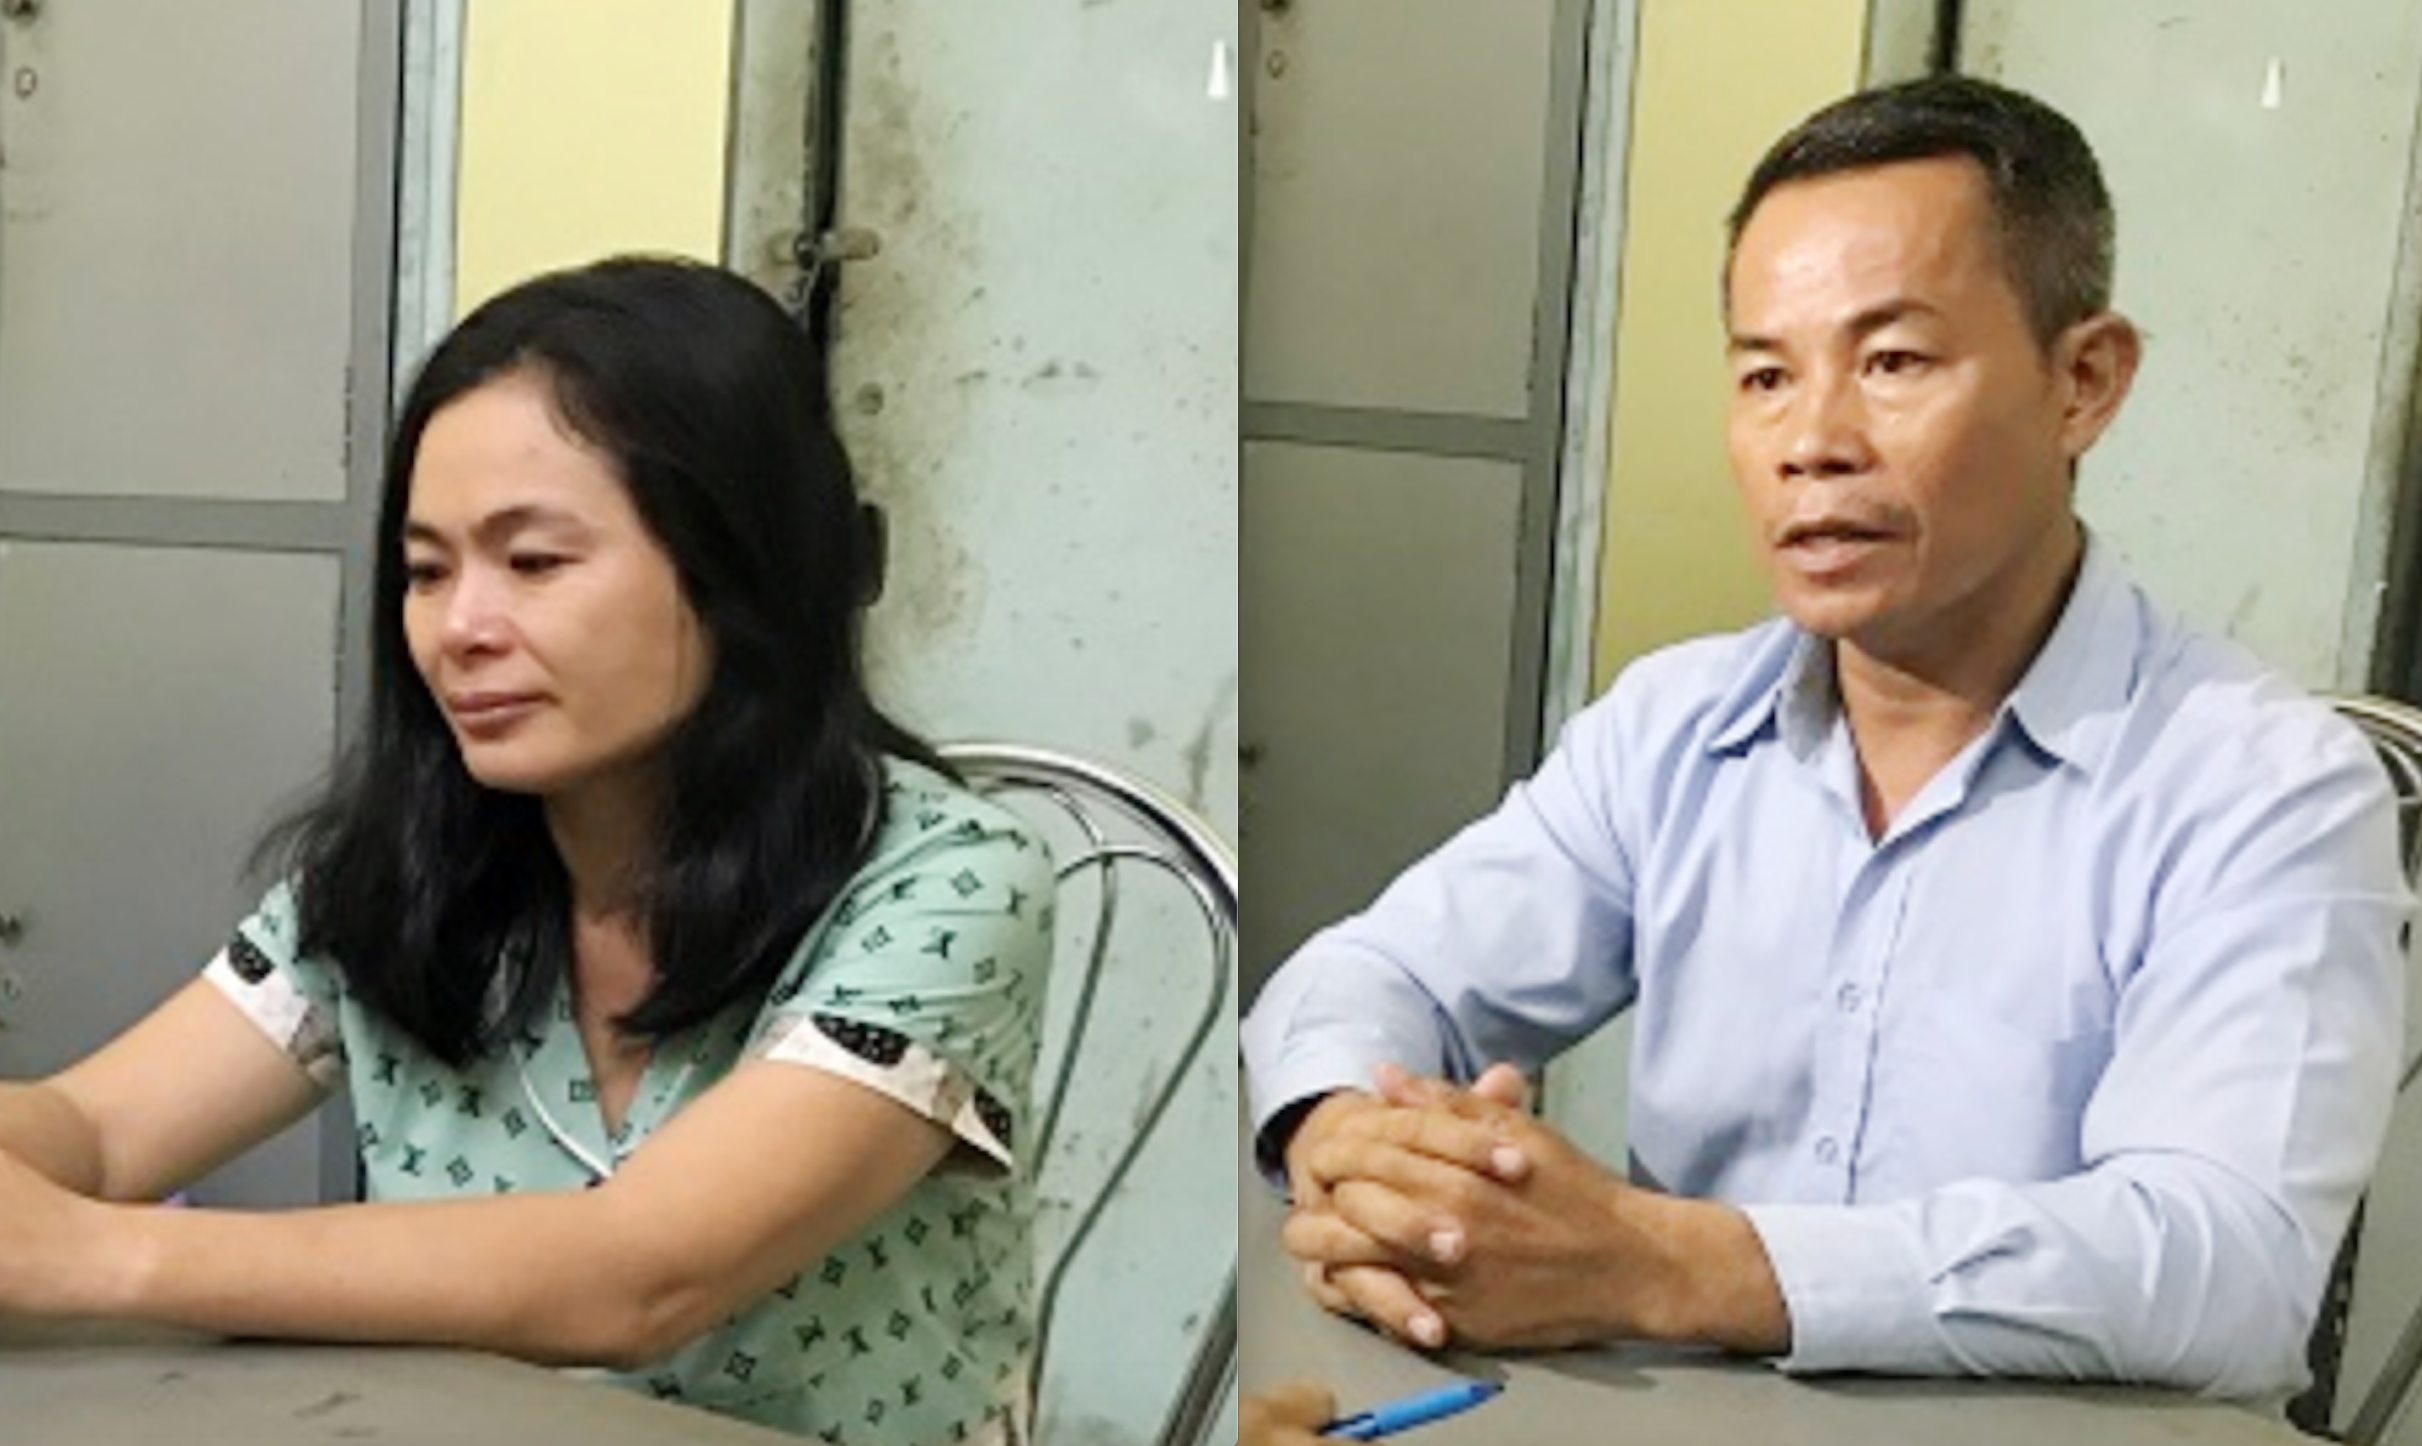 Cơ quan cảnh sát điều tra Công an TP Biên Hòa xác định, trong vụ án này, hai vợ chồng Mai Thị Hồng (41 tuổi) và Nguyễn Thành Hưng (45 tuổi) giữ vai trò chủ mưu, cầm đầu. Ảnh: Minh Châu